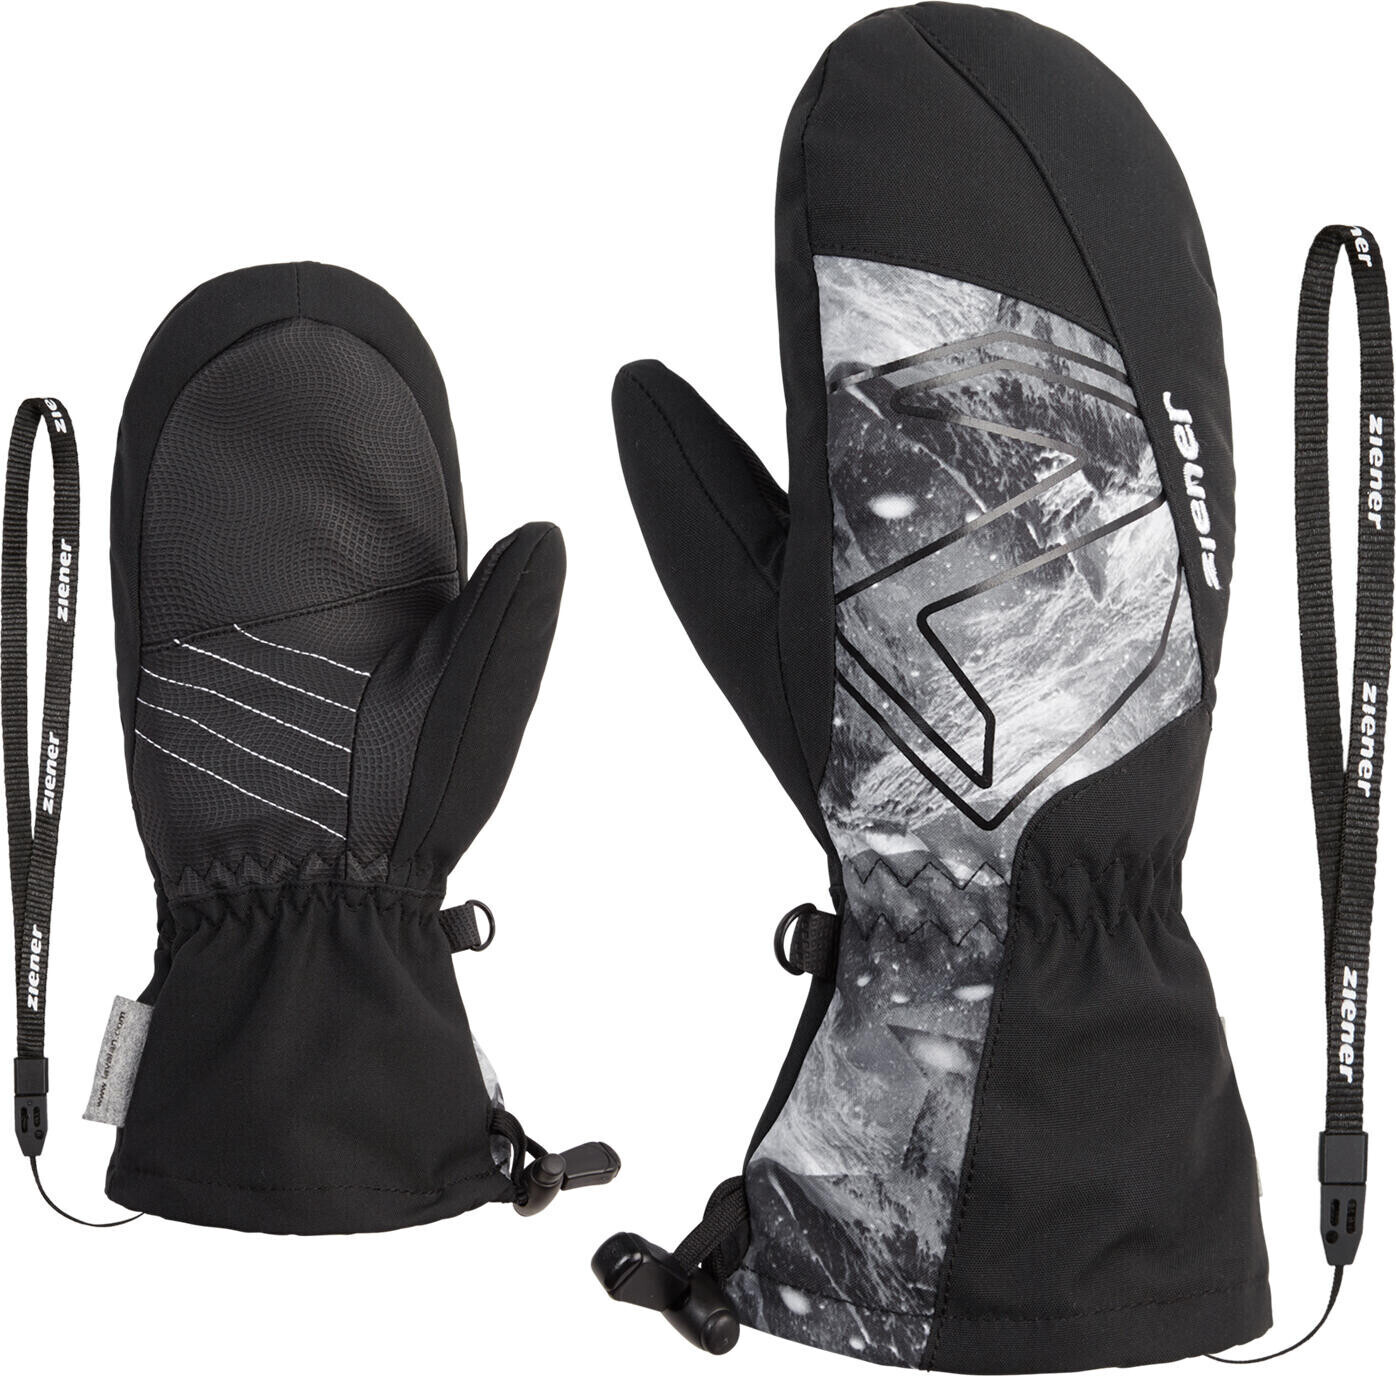 | Mitten € Ziener Junior black.grey ASR 31,35 bei Lavalino AW Glove mountain print Preisvergleich ab